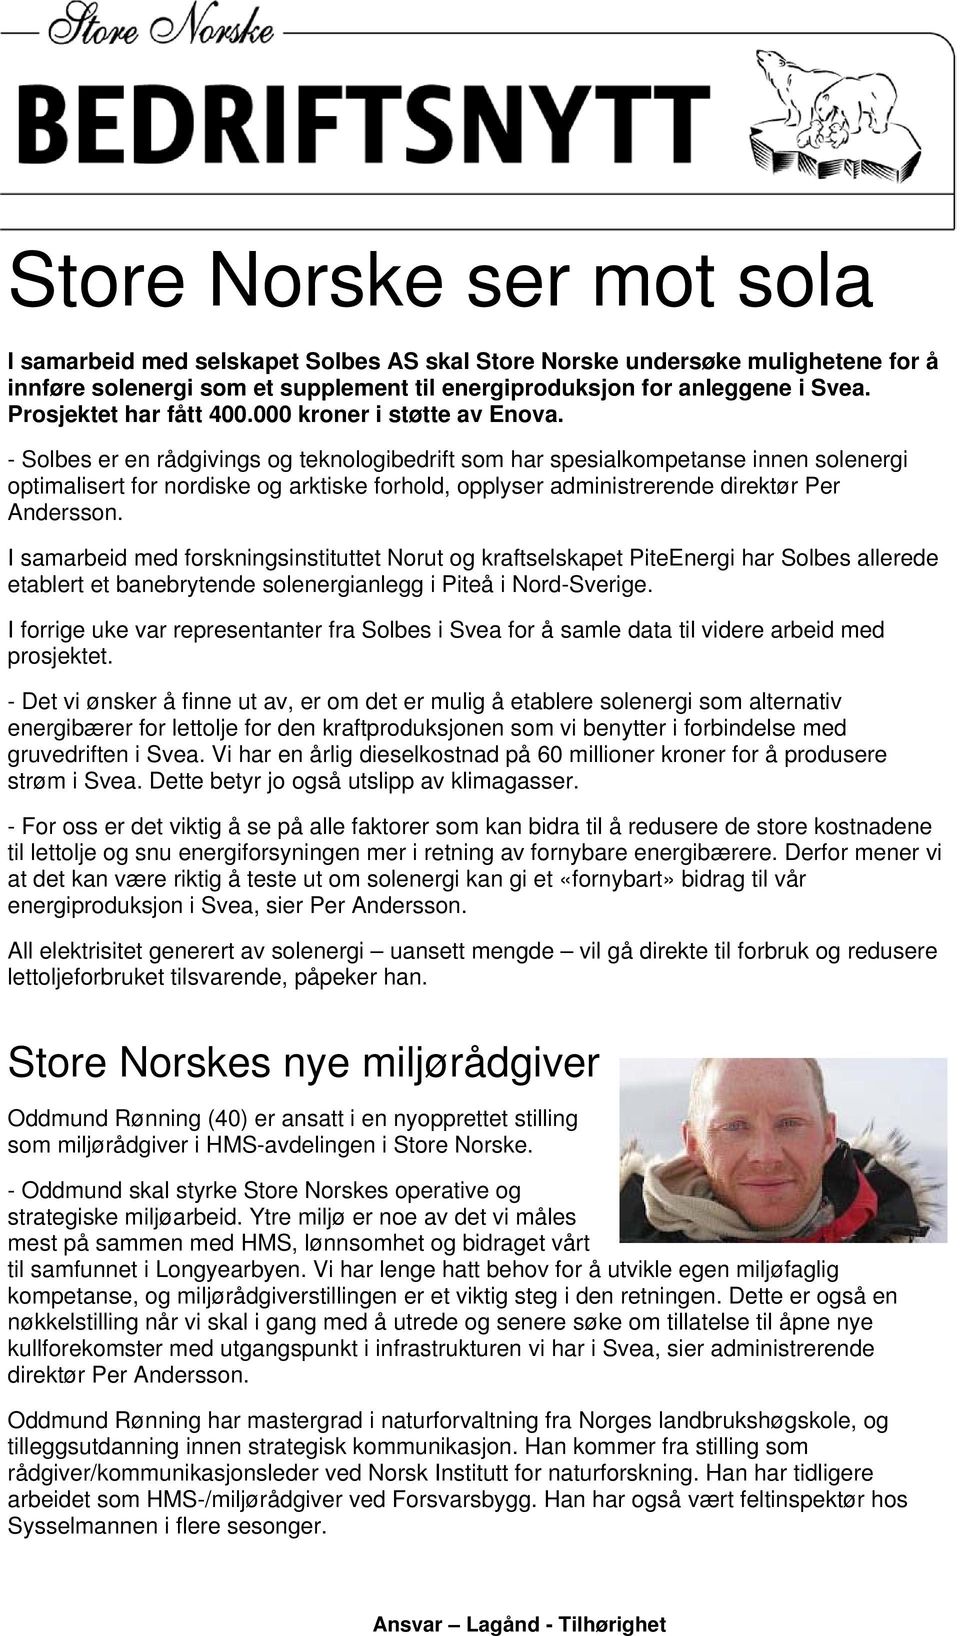 - Solbes er en rådgivings og teknologibedrift som har spesialkompetanse innen solenergi optimalisert for nordiske og arktiske forhold, opplyser administrerende direktør Per Andersson.